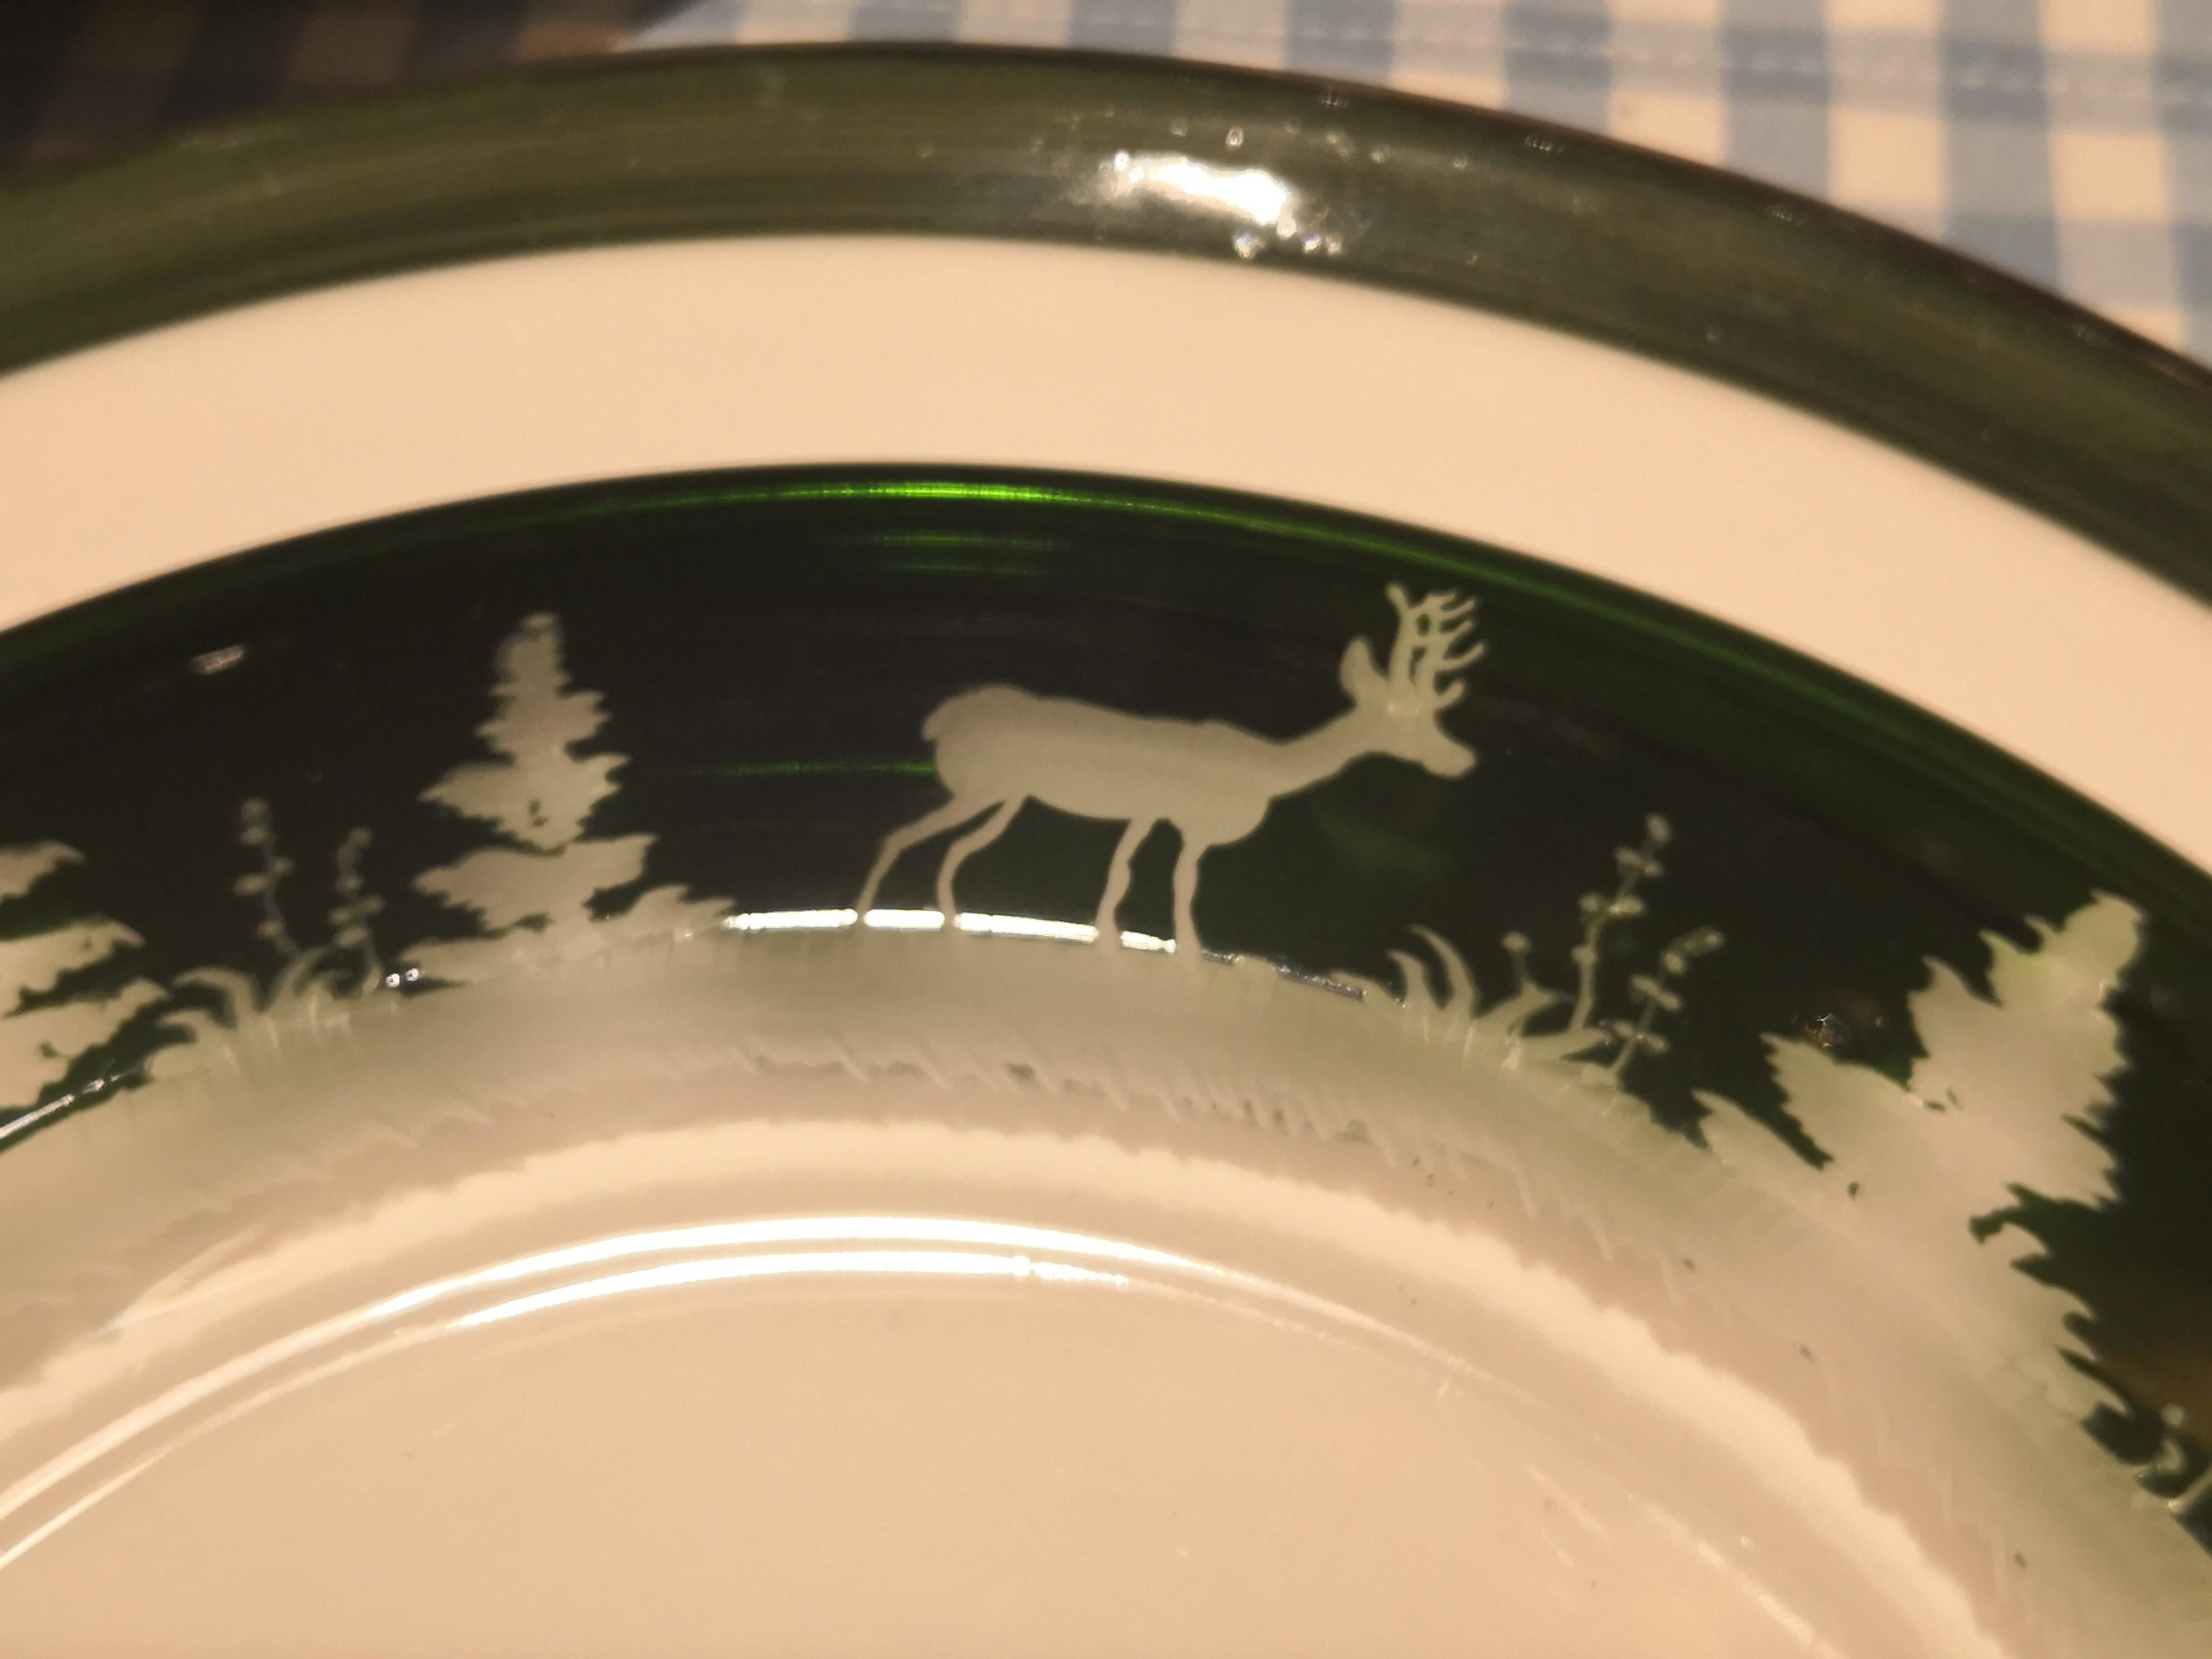 Ensemble de six assiettes en cristal vert avec un décor de chasse antique tout autour. Le charmant décor de la forêt noire est gravé à la main et présente un décor antique de cerfs, de lapins et d'arbres. Les plaques de verre peuvent être commandées